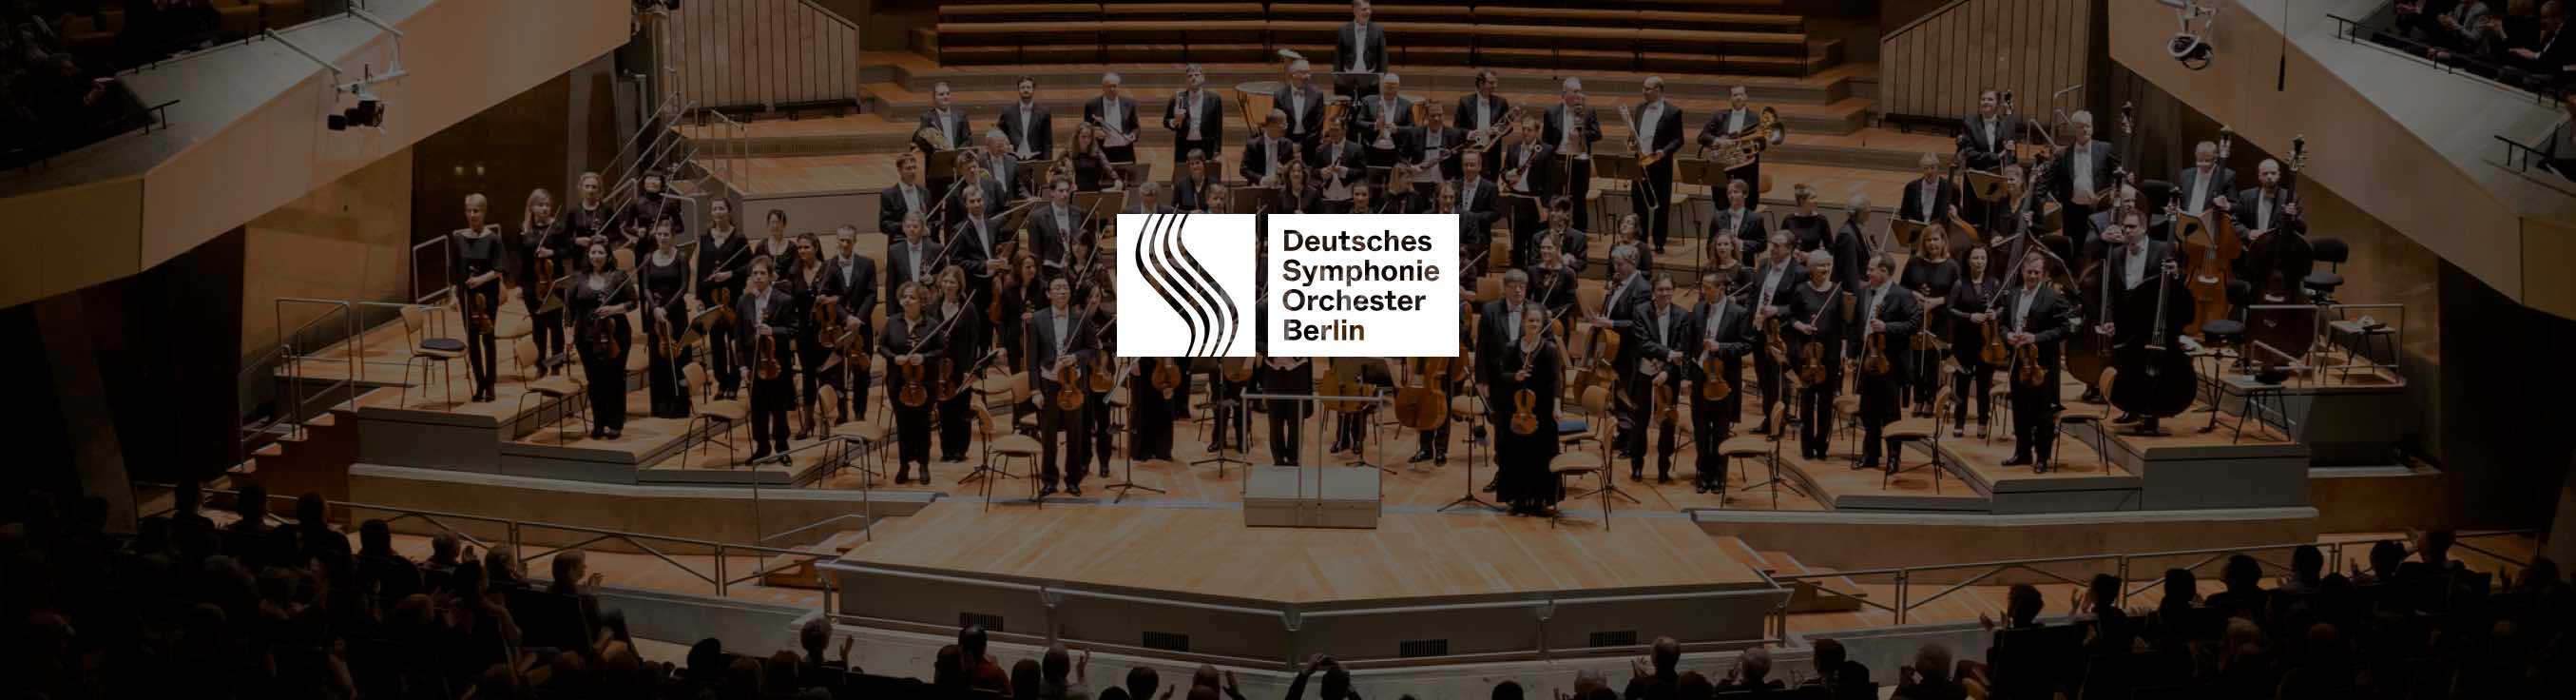 Deutsches Symphonieorchester in der Philharmonie Berlin